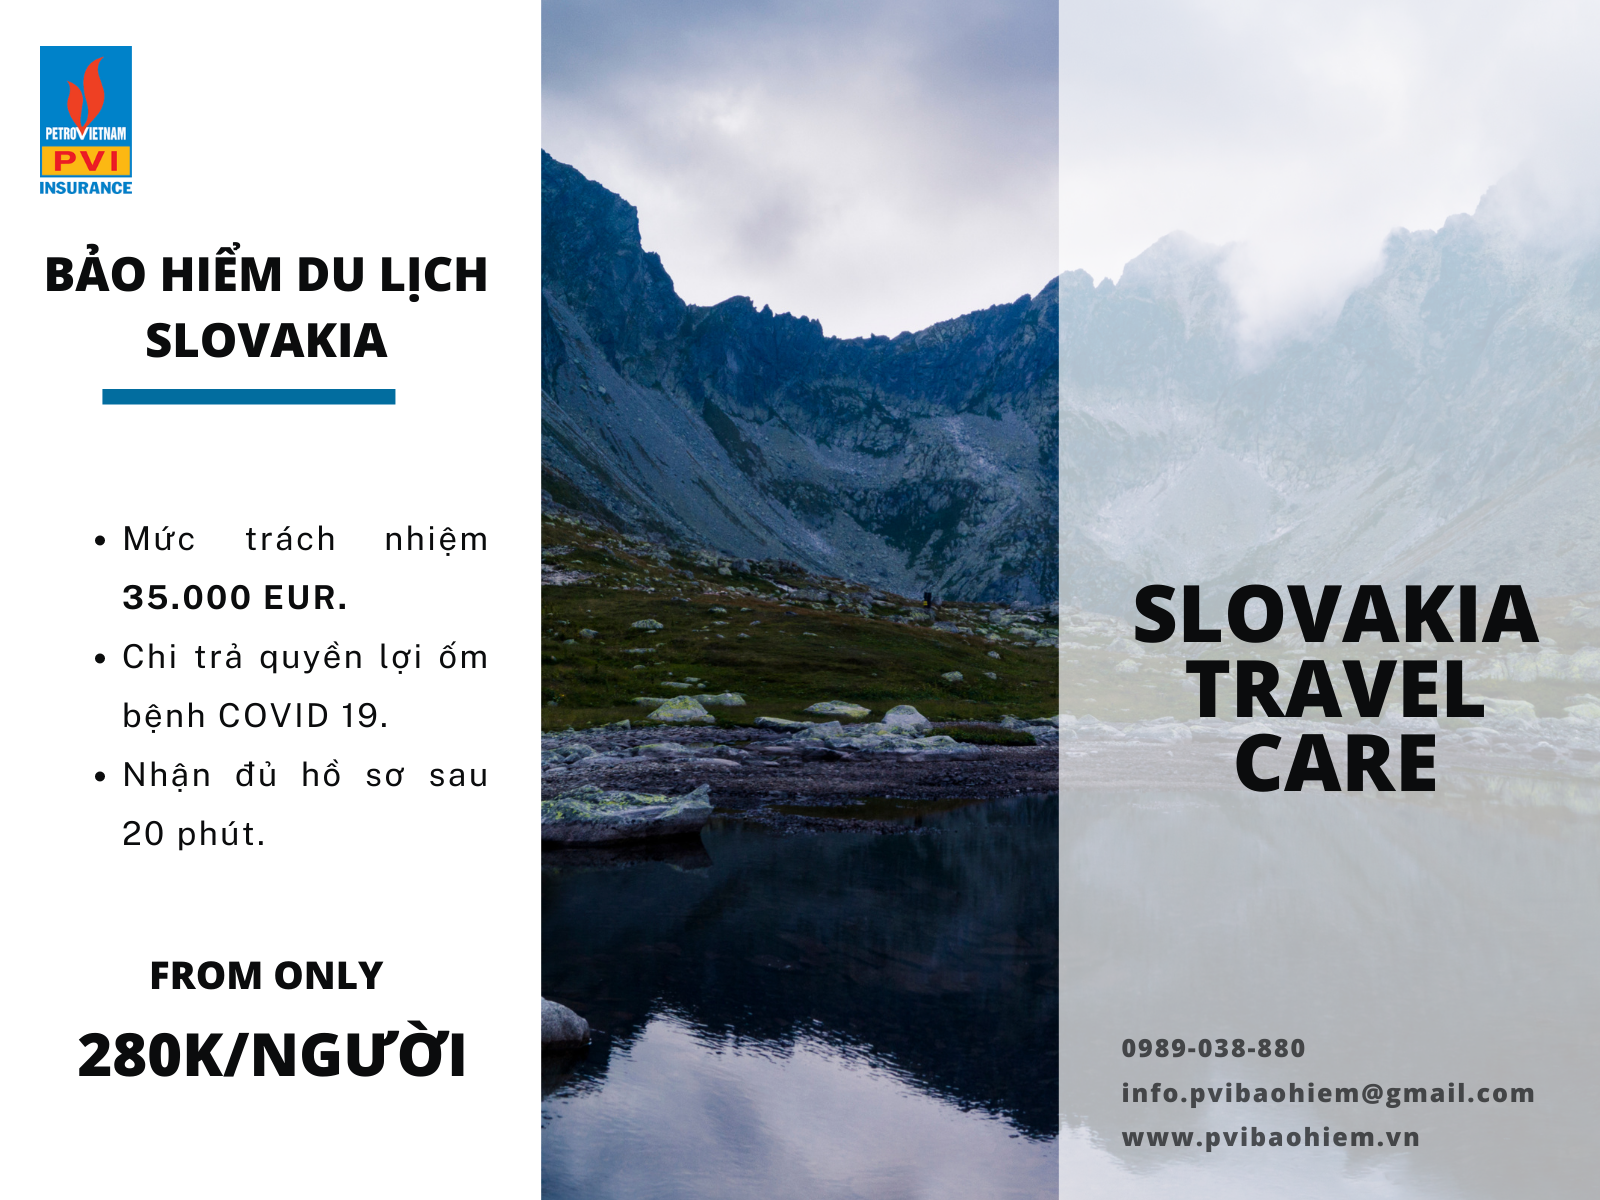 bảo hiểm du lịch slovakia giá rẻ có chi trả covid 19